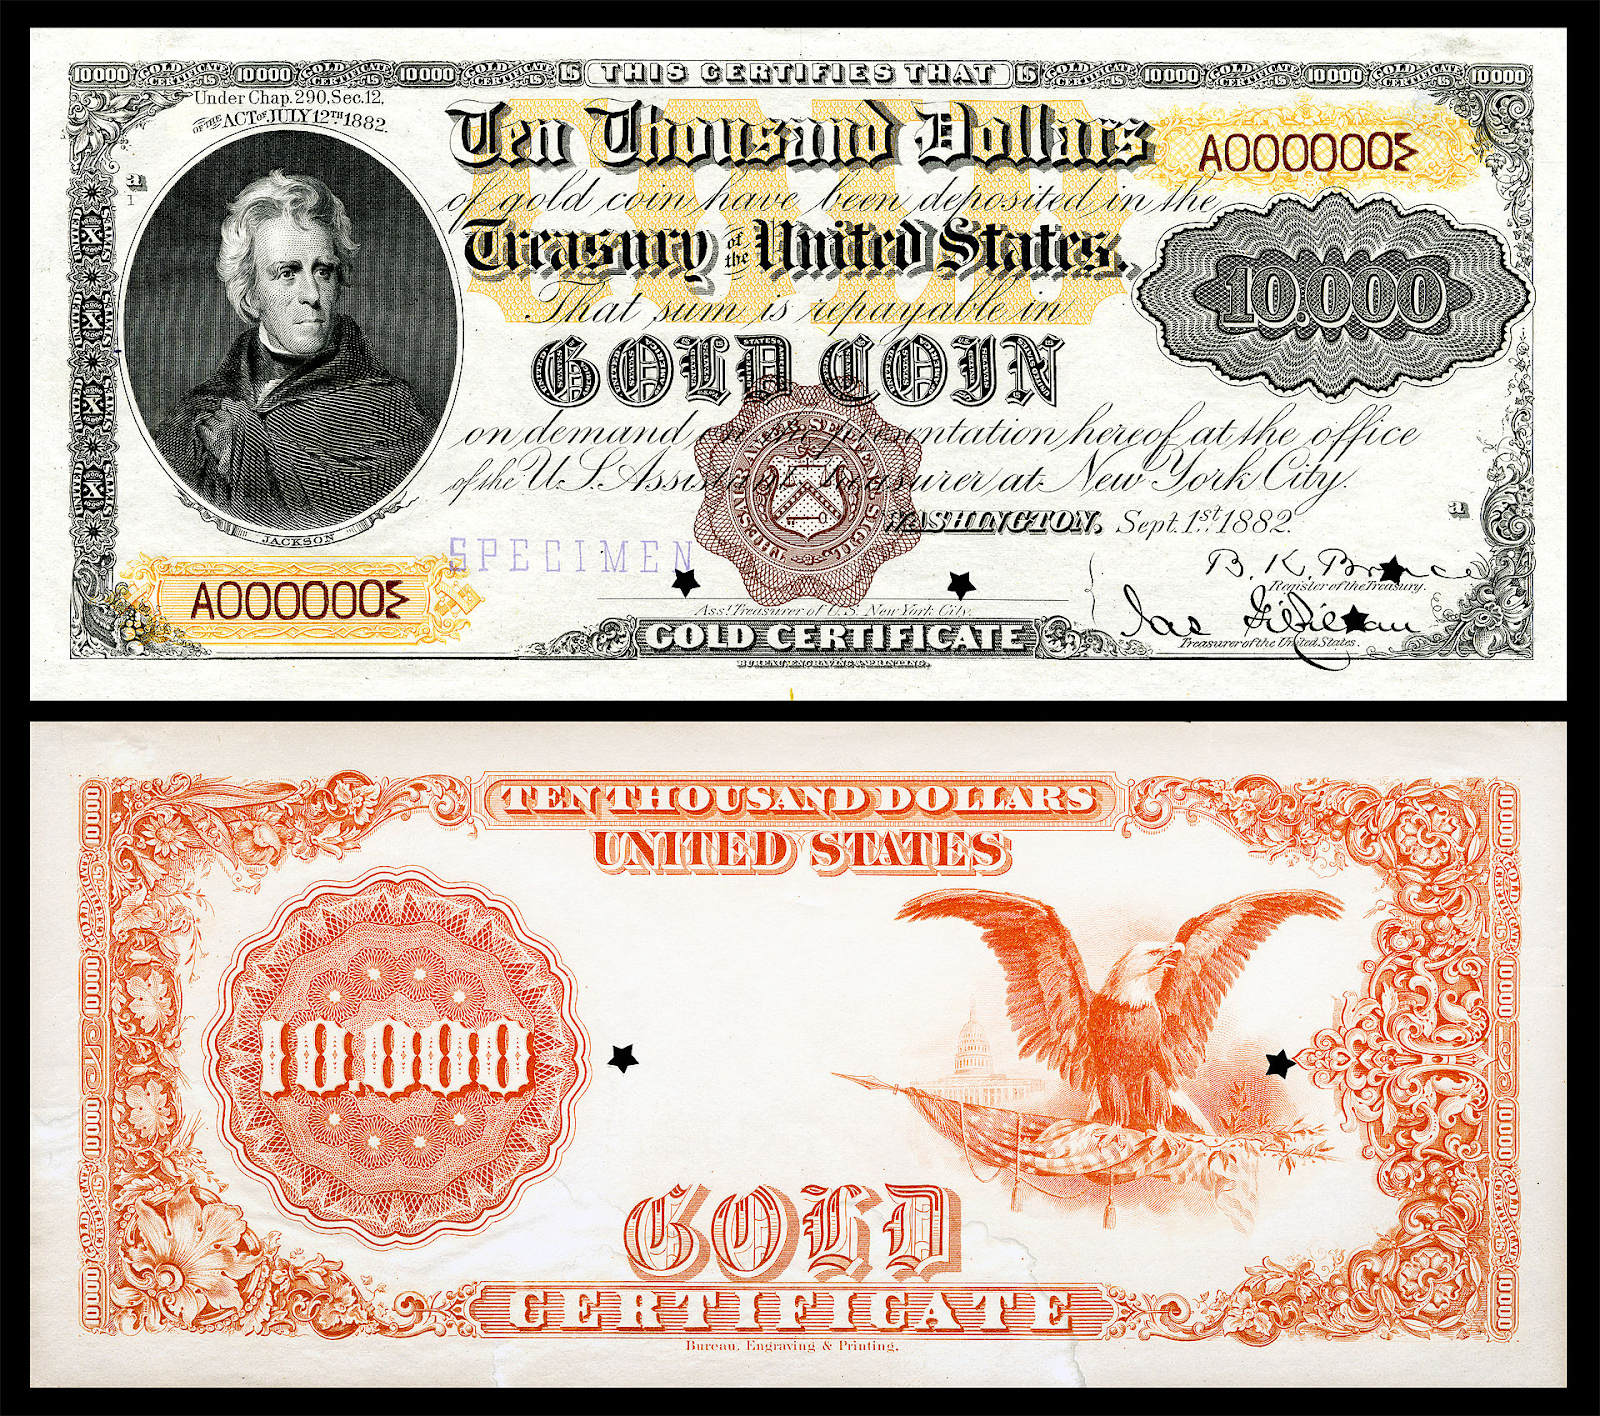 (tiền giấy được chính phủ Mỹ phát hành có chứng chỉ vàng. Tổng thống Nixon bãi bỏ liên kết bản vị vàng với USD vào năm 1971 - nguồn wikipedia)